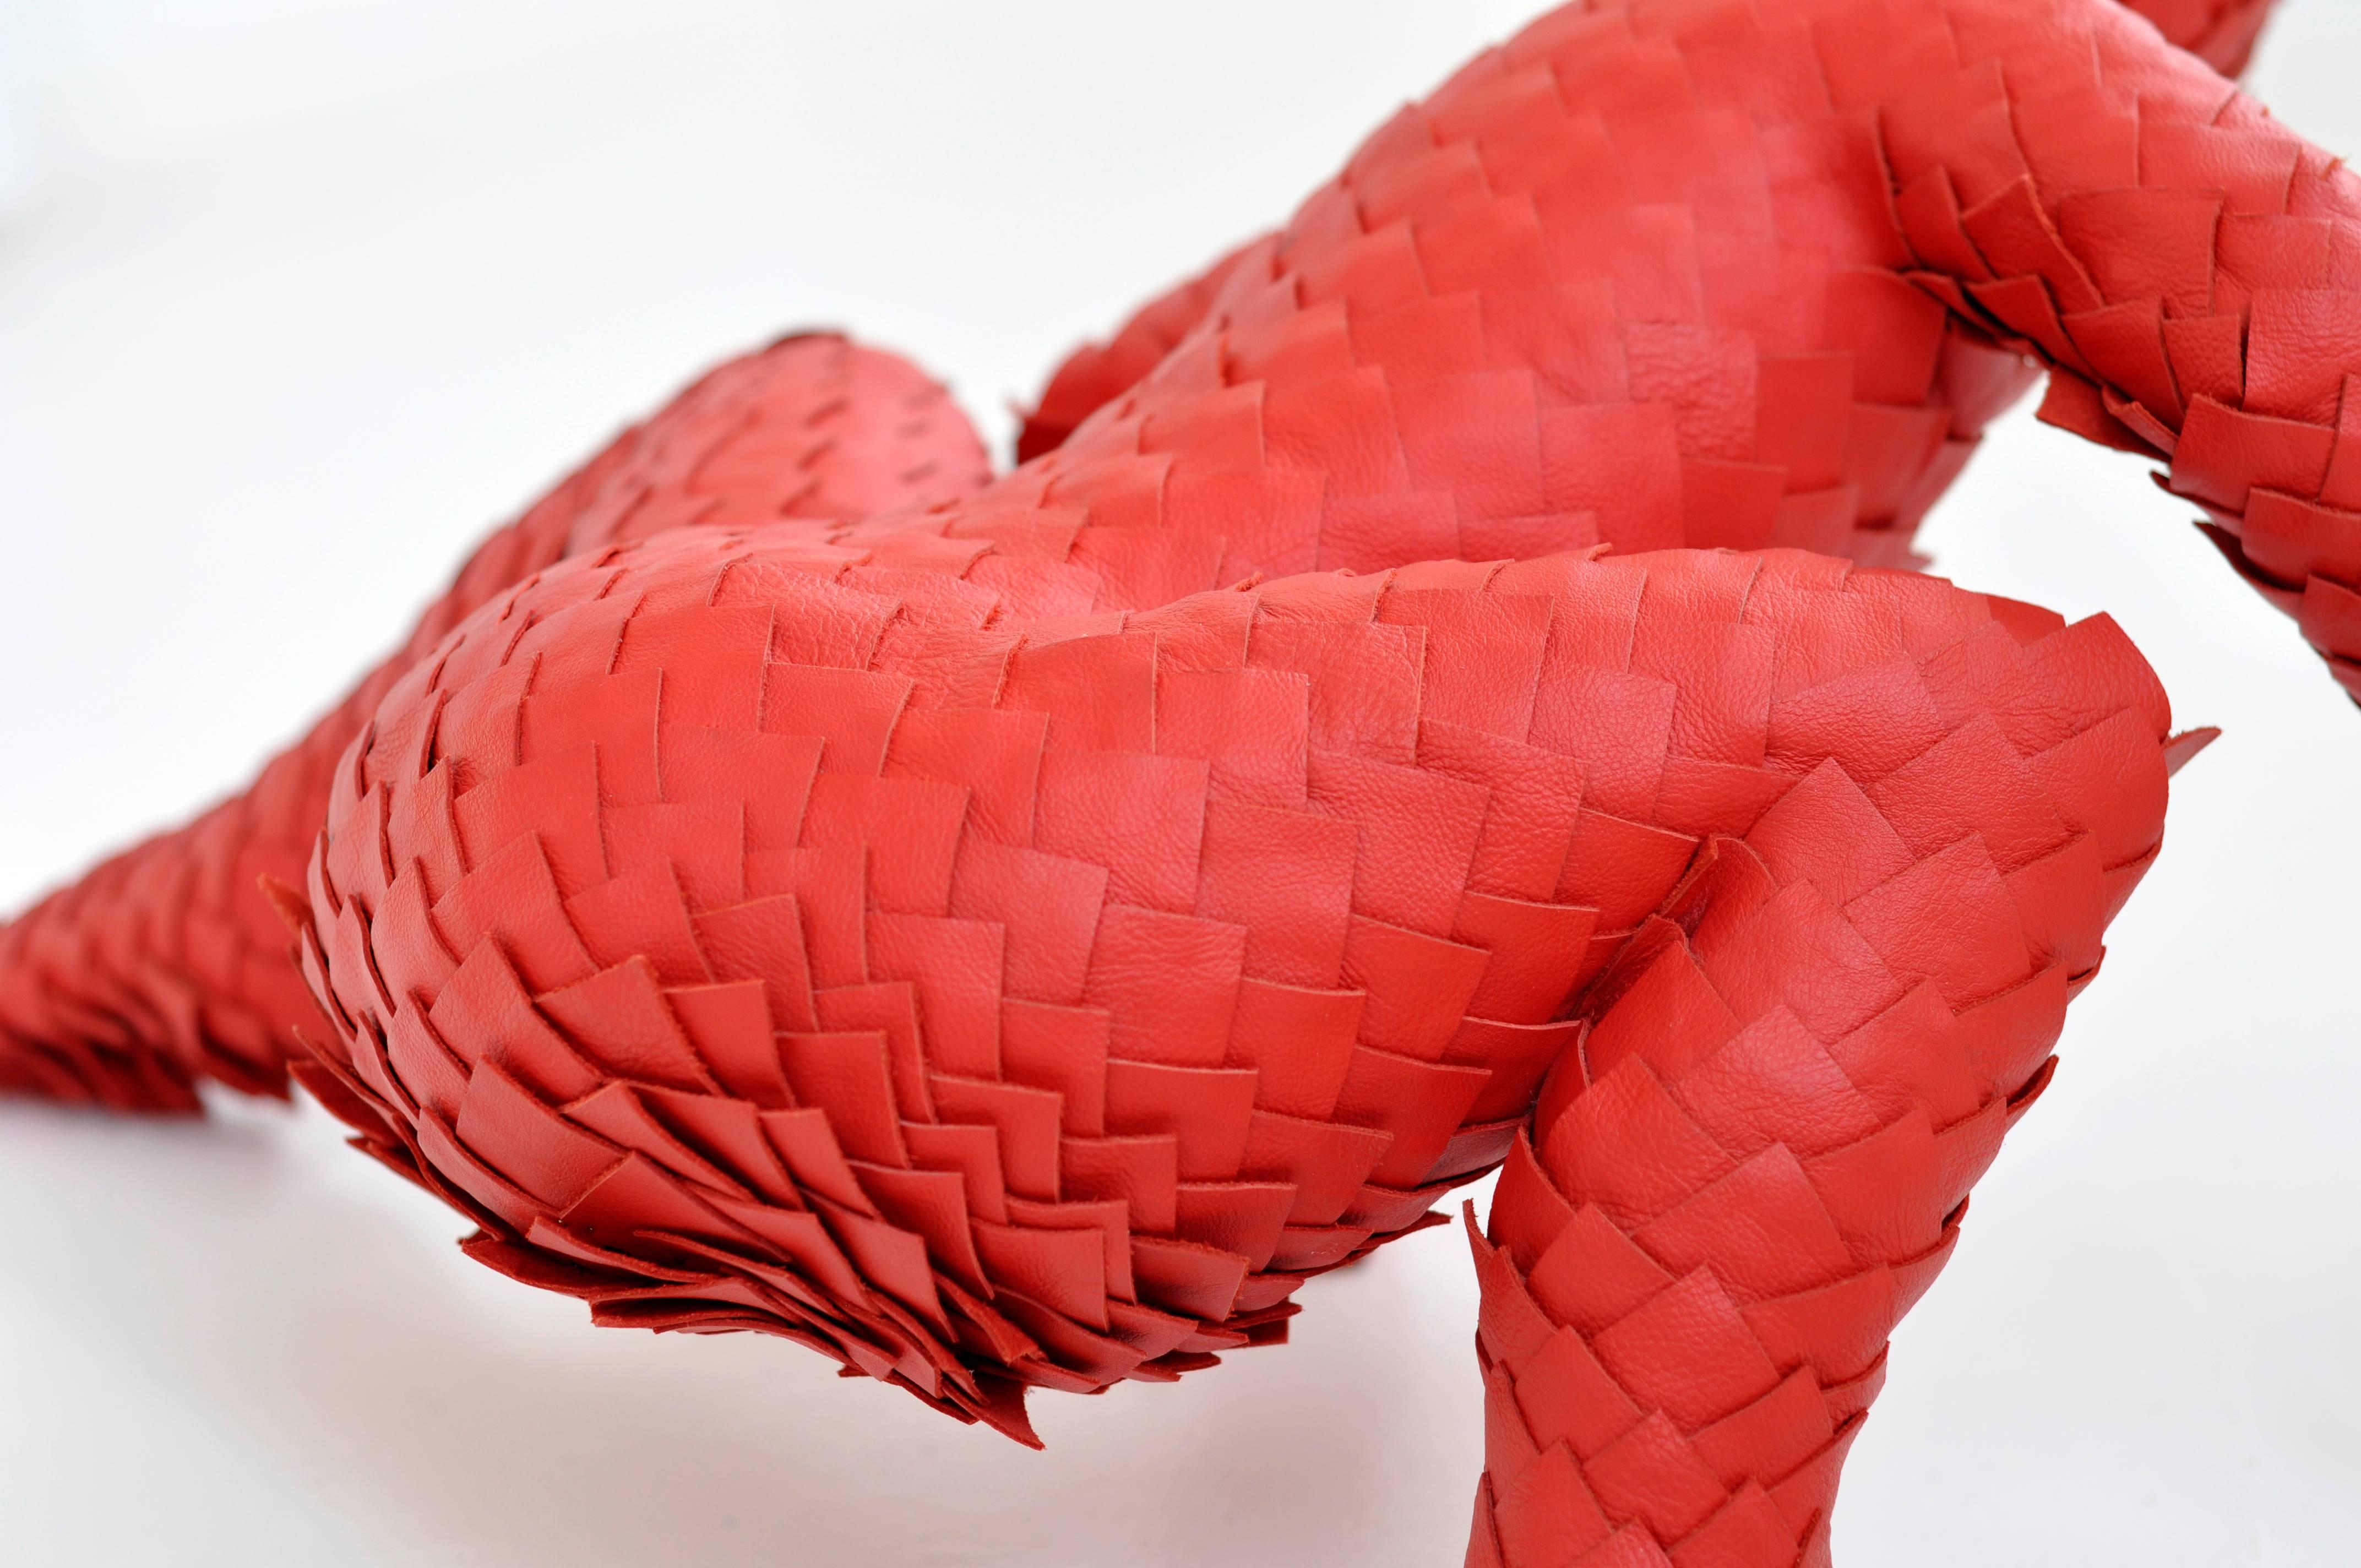 Red leather sculpture. Dutch art. Hand crafted, unique sculpture. - Modern Sculpture by Sabi van Hemert